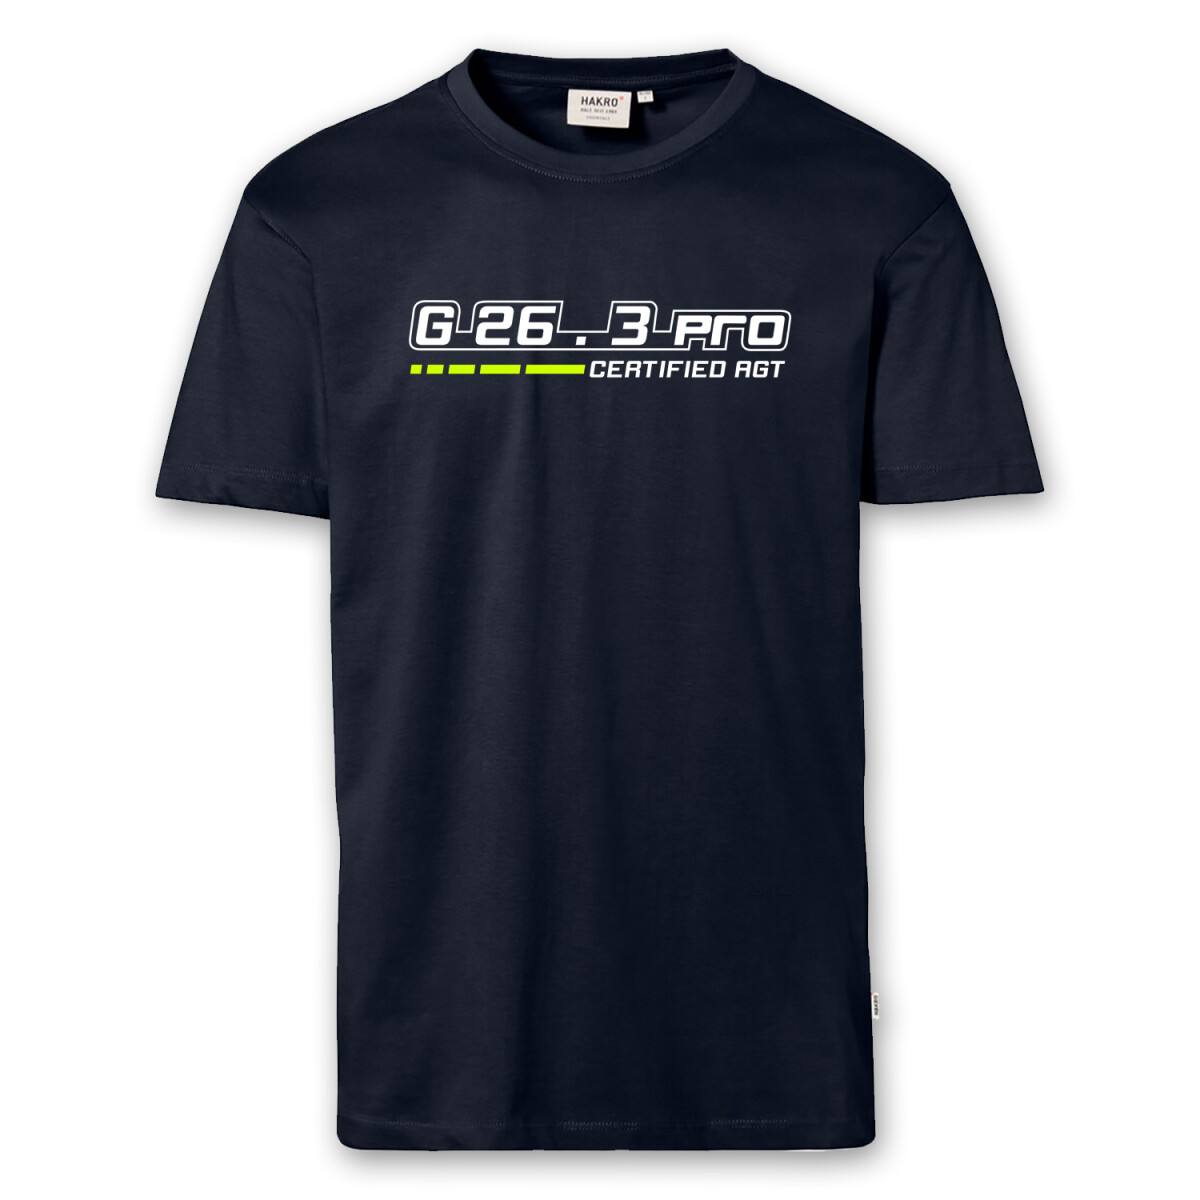 T-Shirt Männer | G26.3 certified AGT | BACKDRA